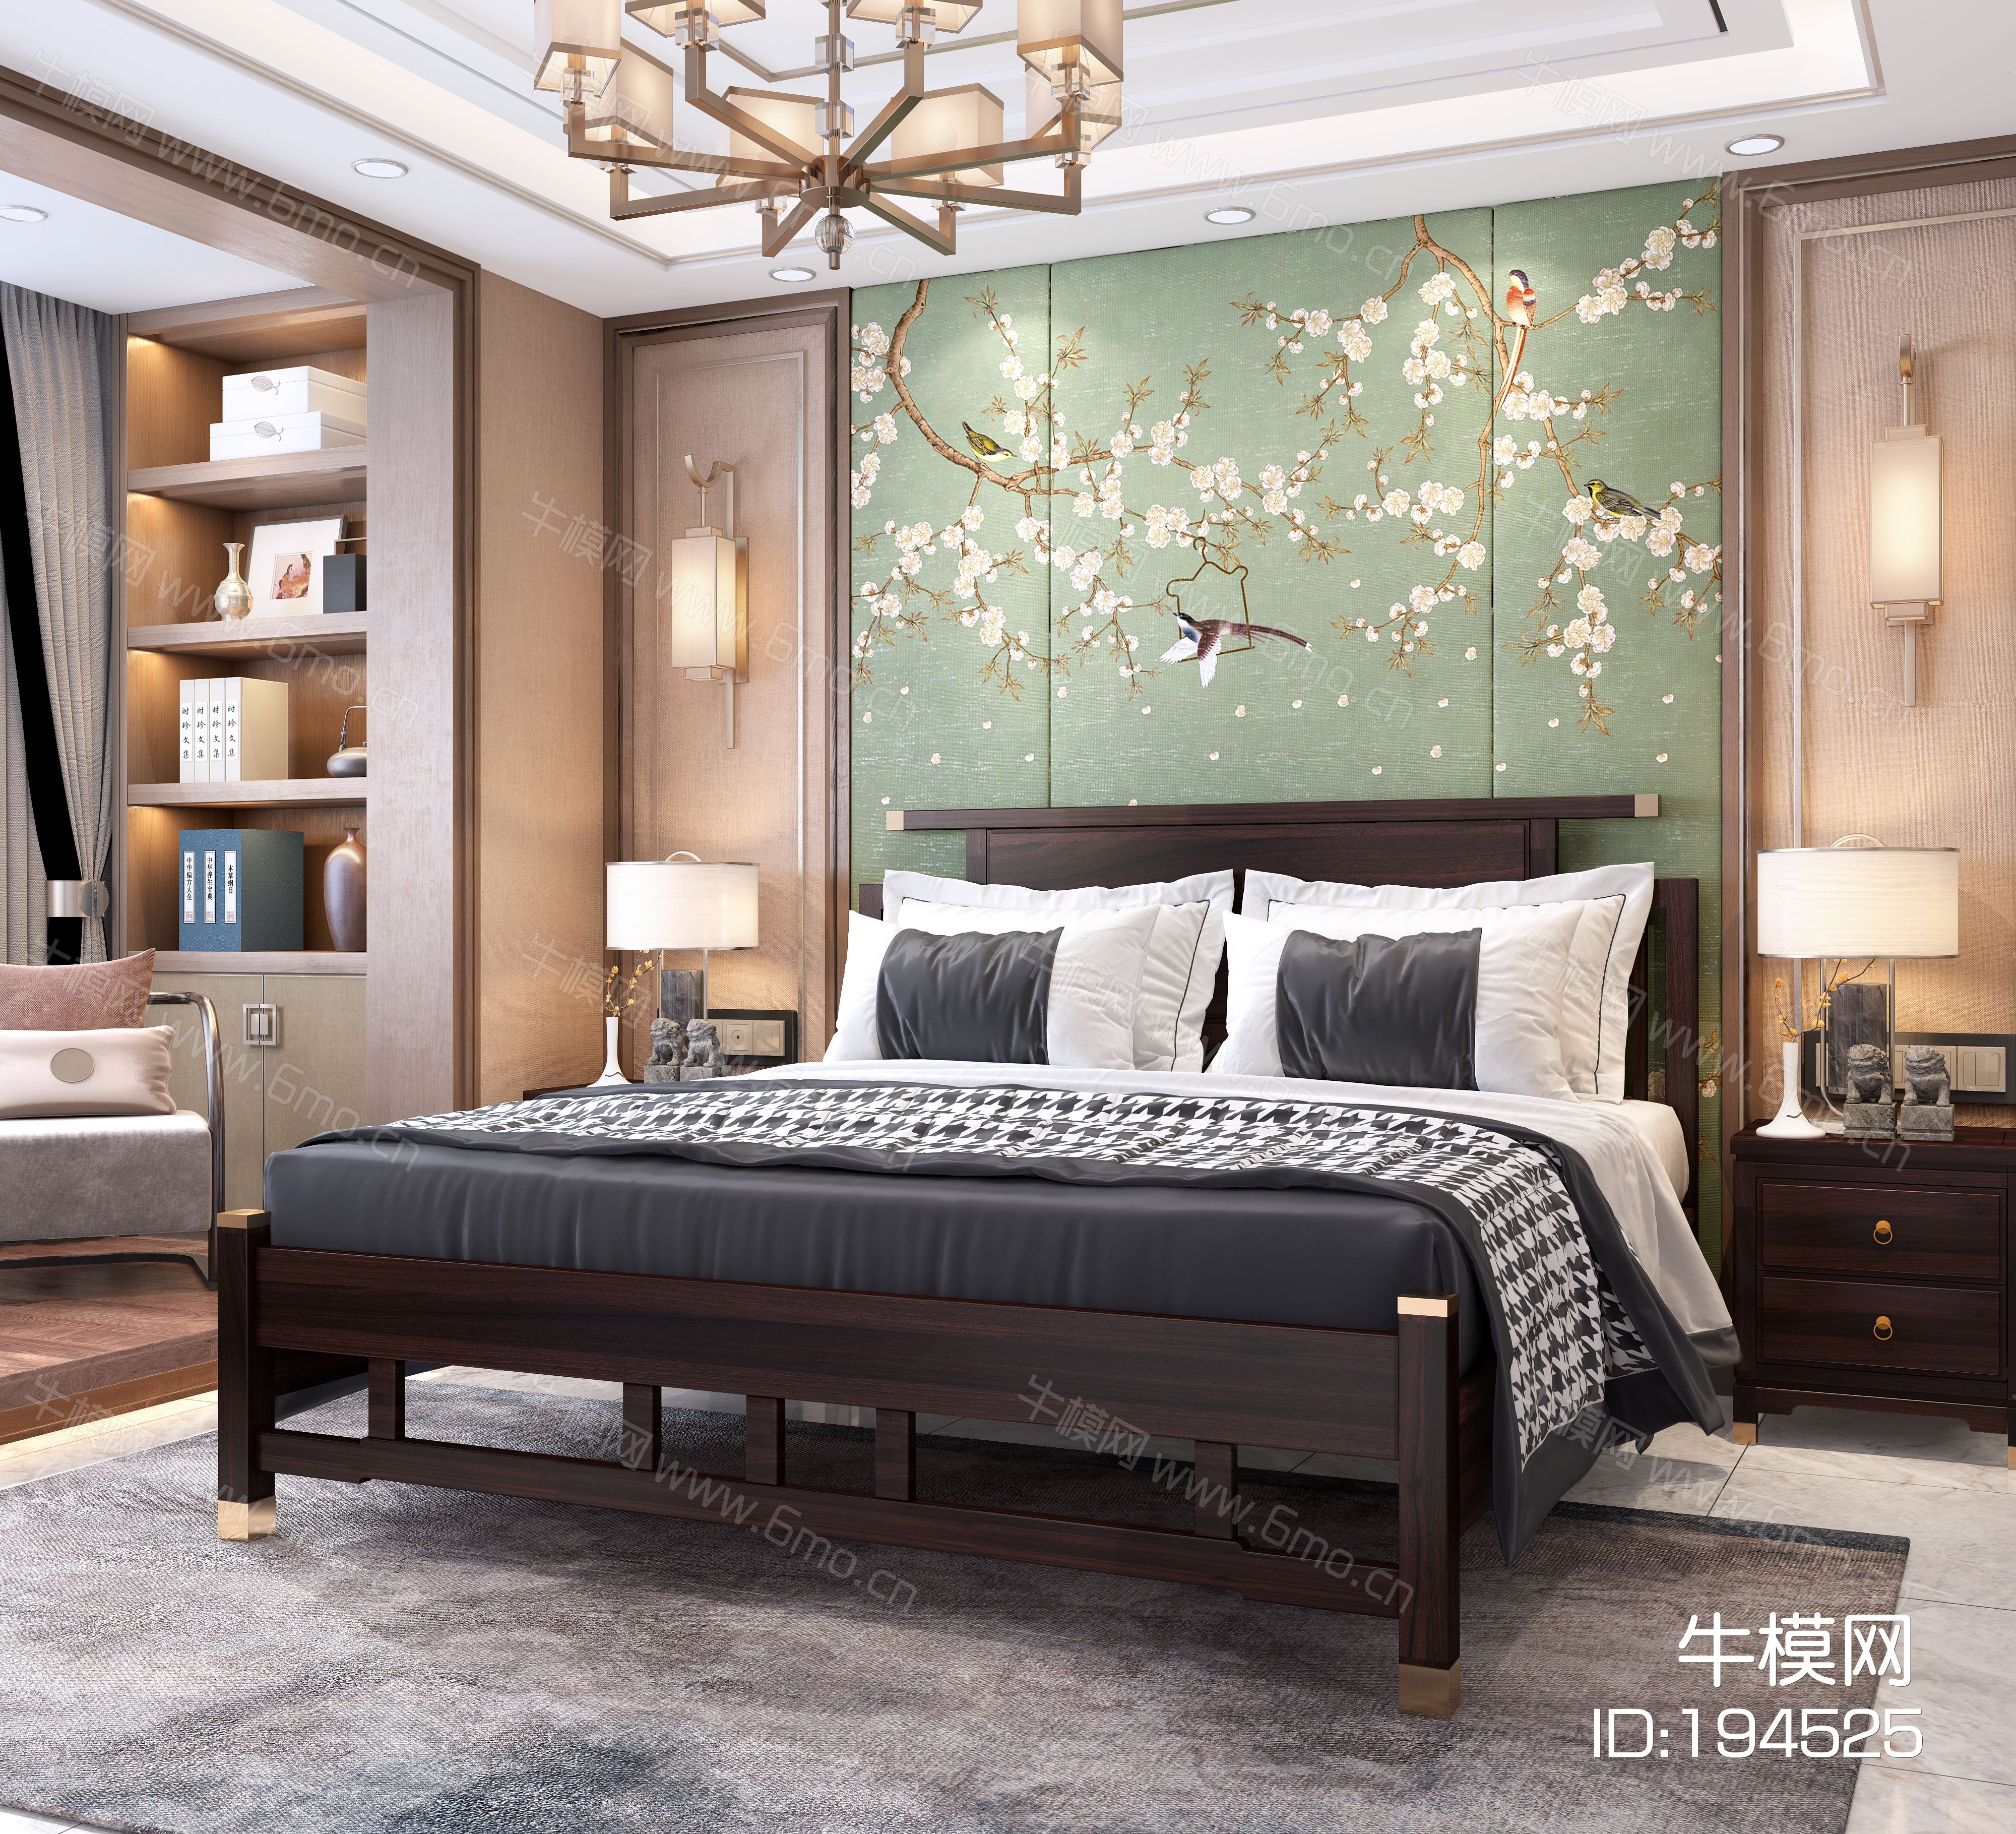 新中式双人床 吊灯 衣柜 地毯 床头柜 壁灯 新中式壁画